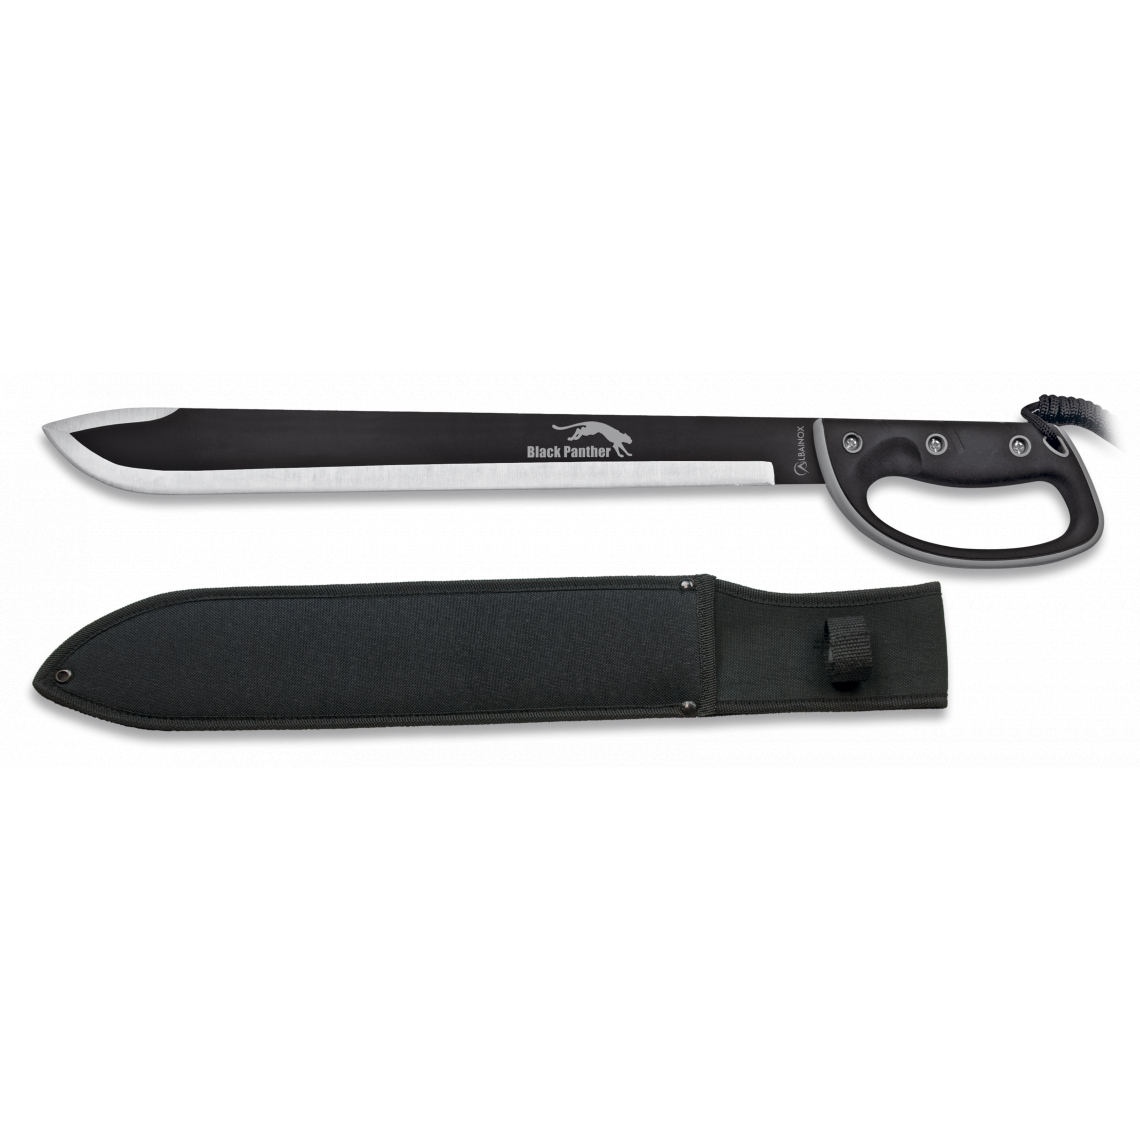 Mačeta Albainox Black Panther 45 cm - stříbrná-černá (18+)